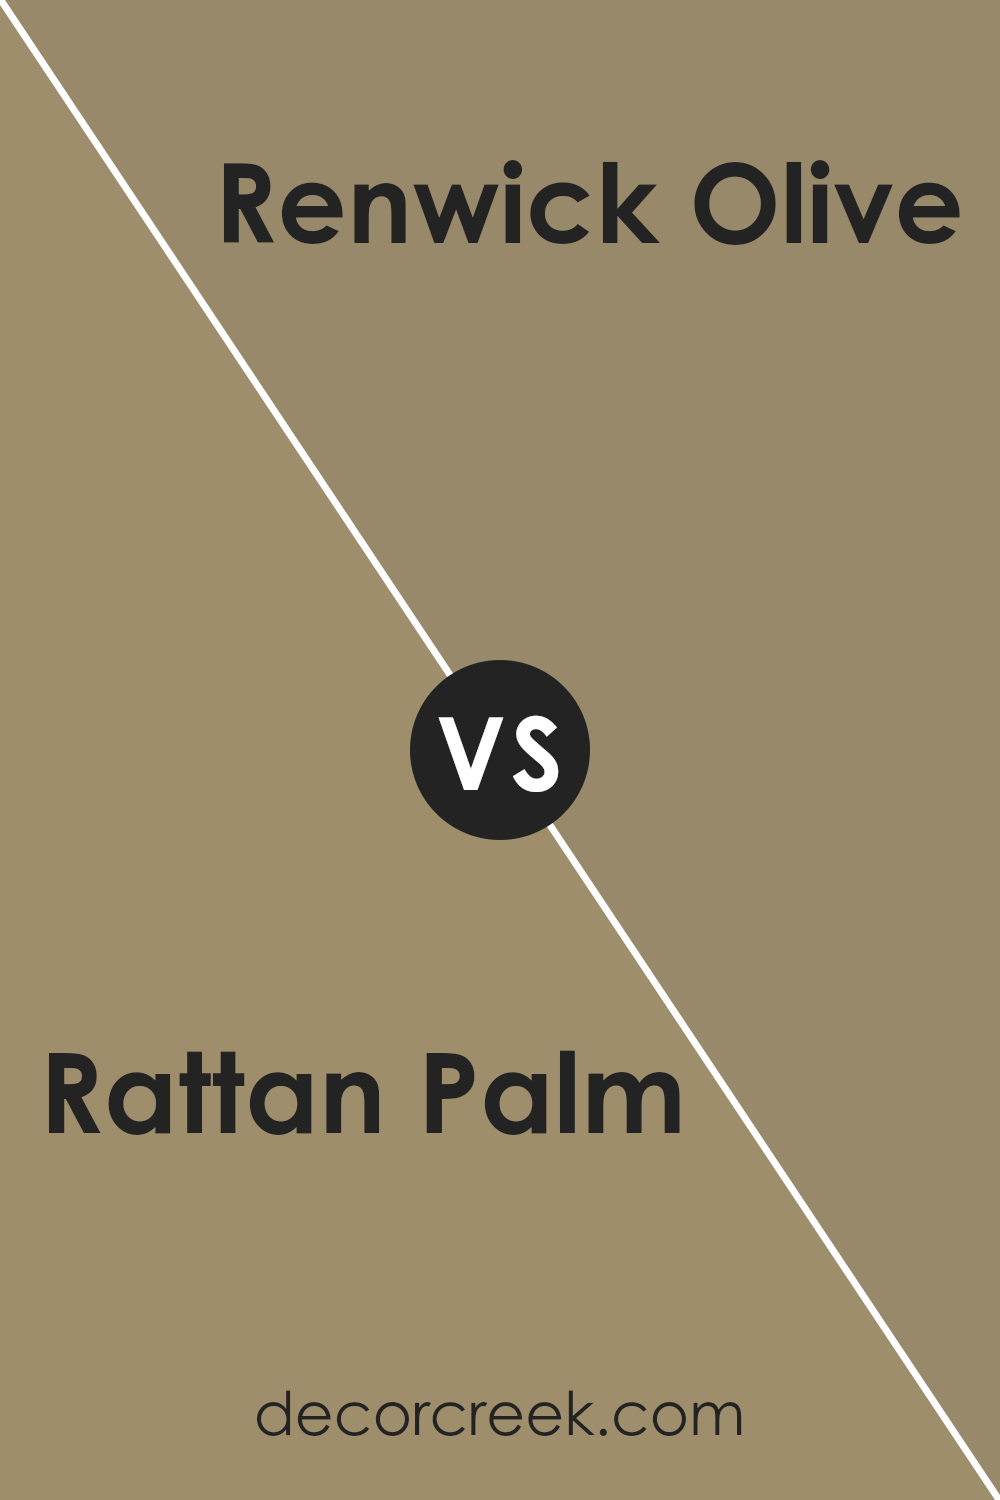 rattan_palm_sw_9533_vs_renwick_olive_sw_2815